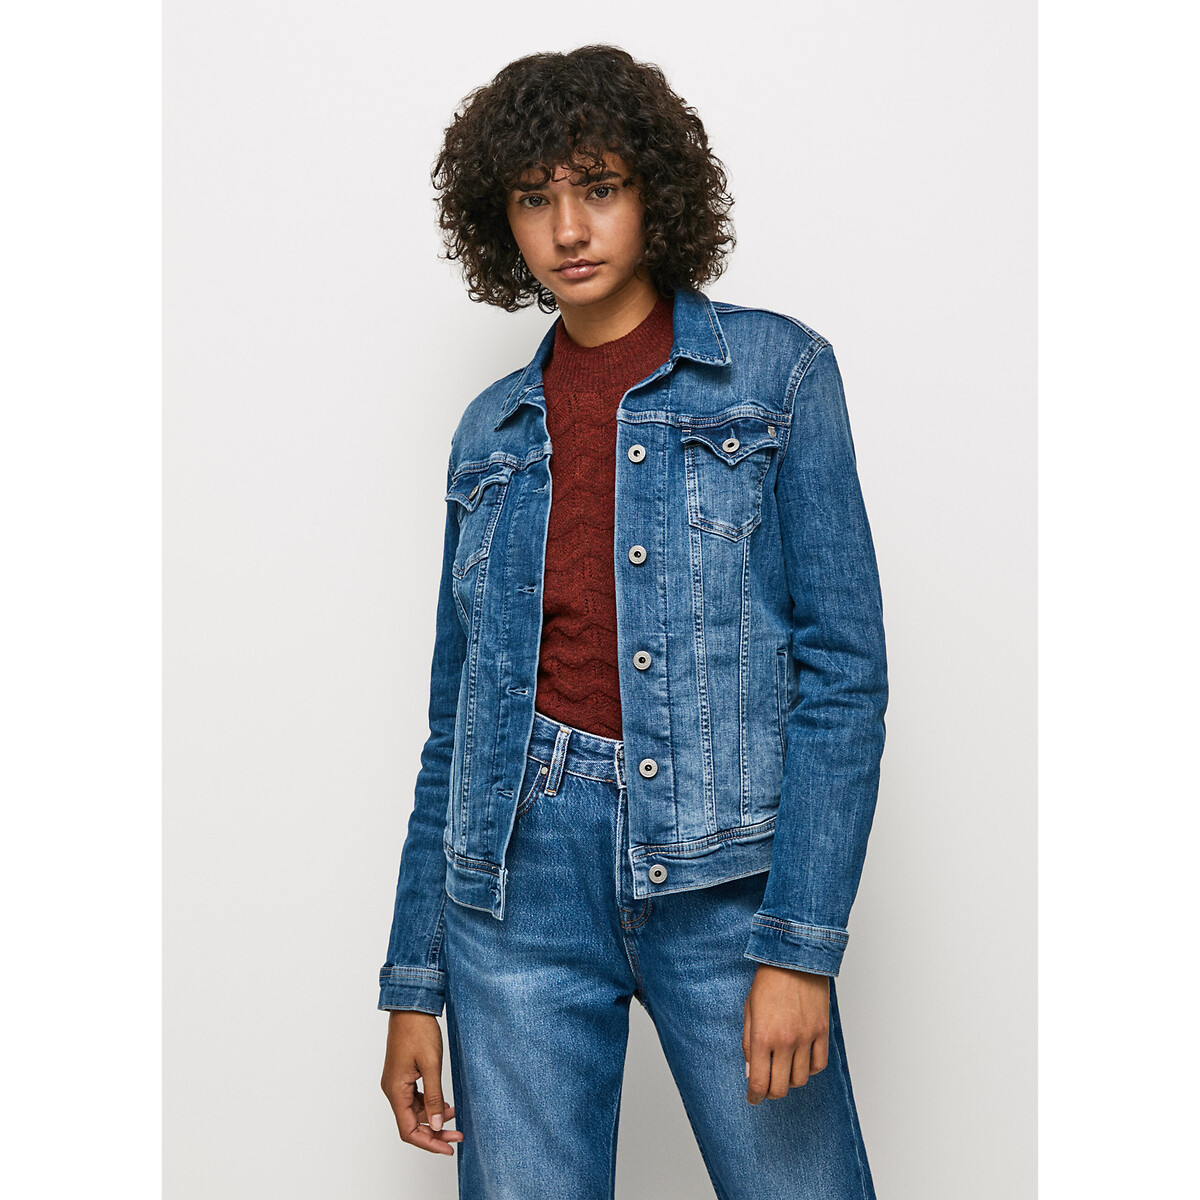 Куртка прямого покроя из джинсовой ткани S синий футболка поло прямого покроя из трикотажа пике s красный